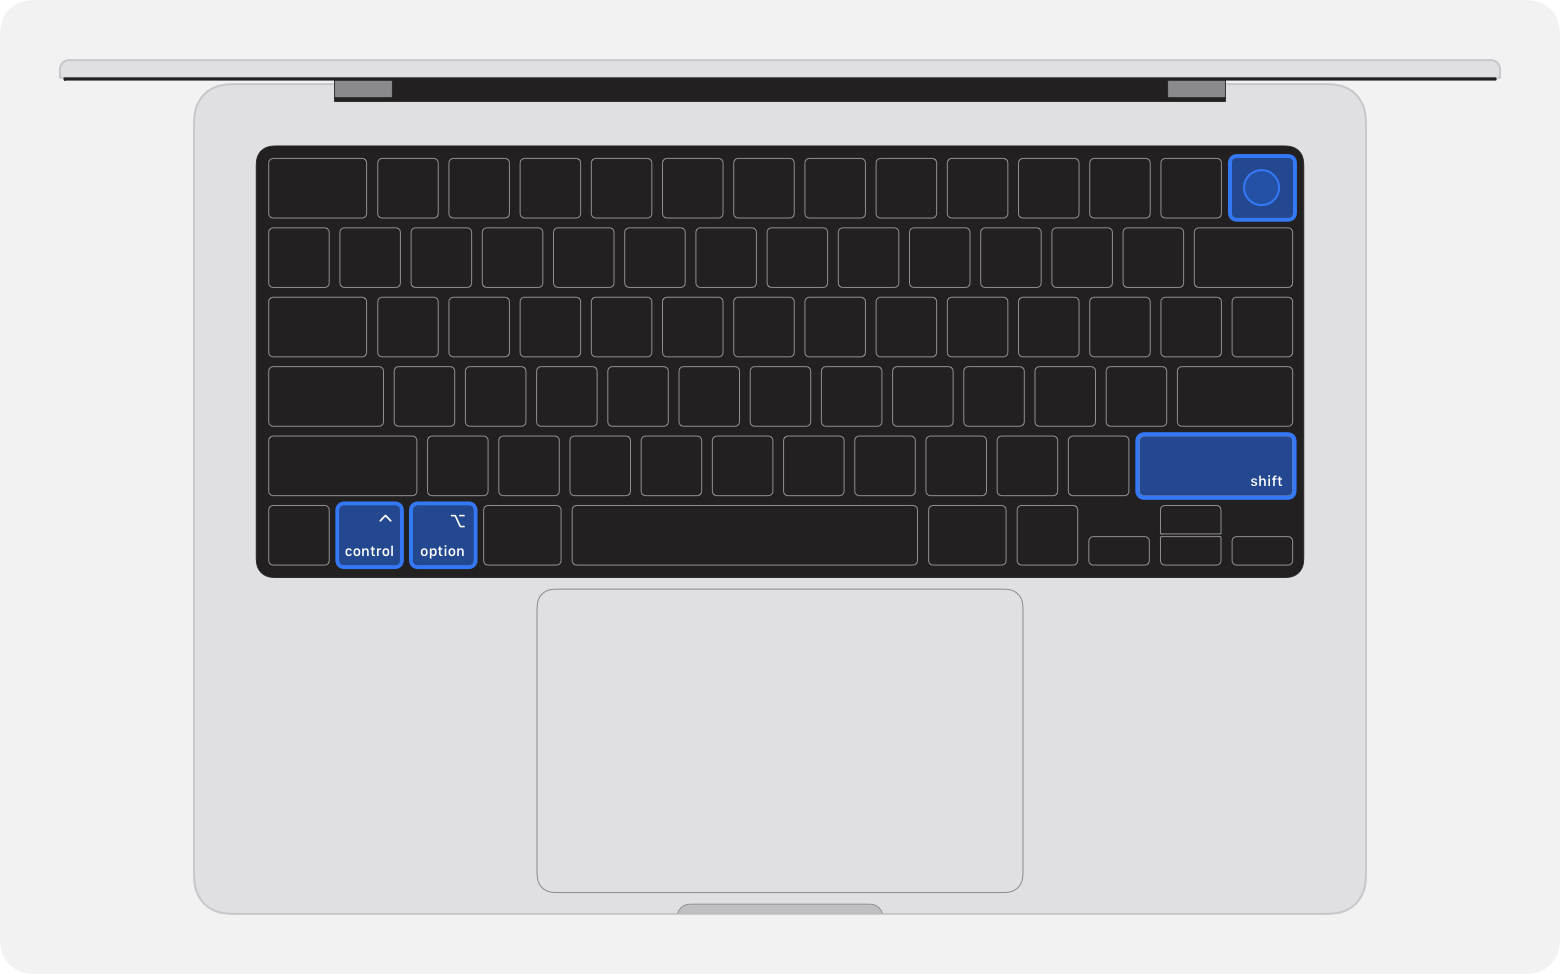 Зображення ноутбука зверху, виділено чотири клавіші